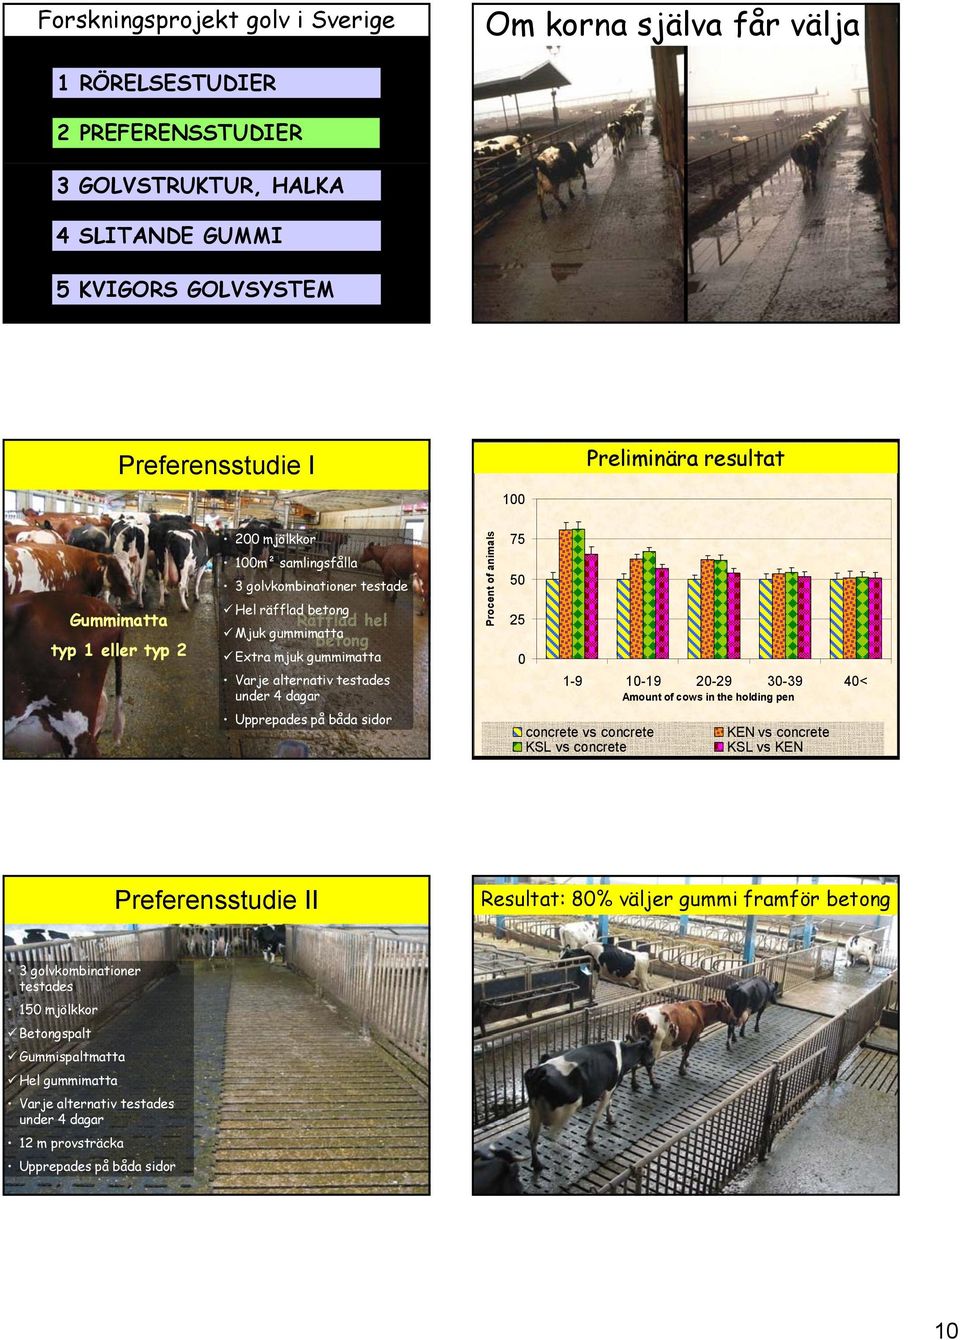 mjuk gummimatta Räfflad hel Mjuk gummimatta betong Extra mjuk gummimatta Varje alternativ testades under 4 dagar ent of animals Proce 75 50 25 0 1-9 10-19 20-29 30-39 40< Amount of cows in the